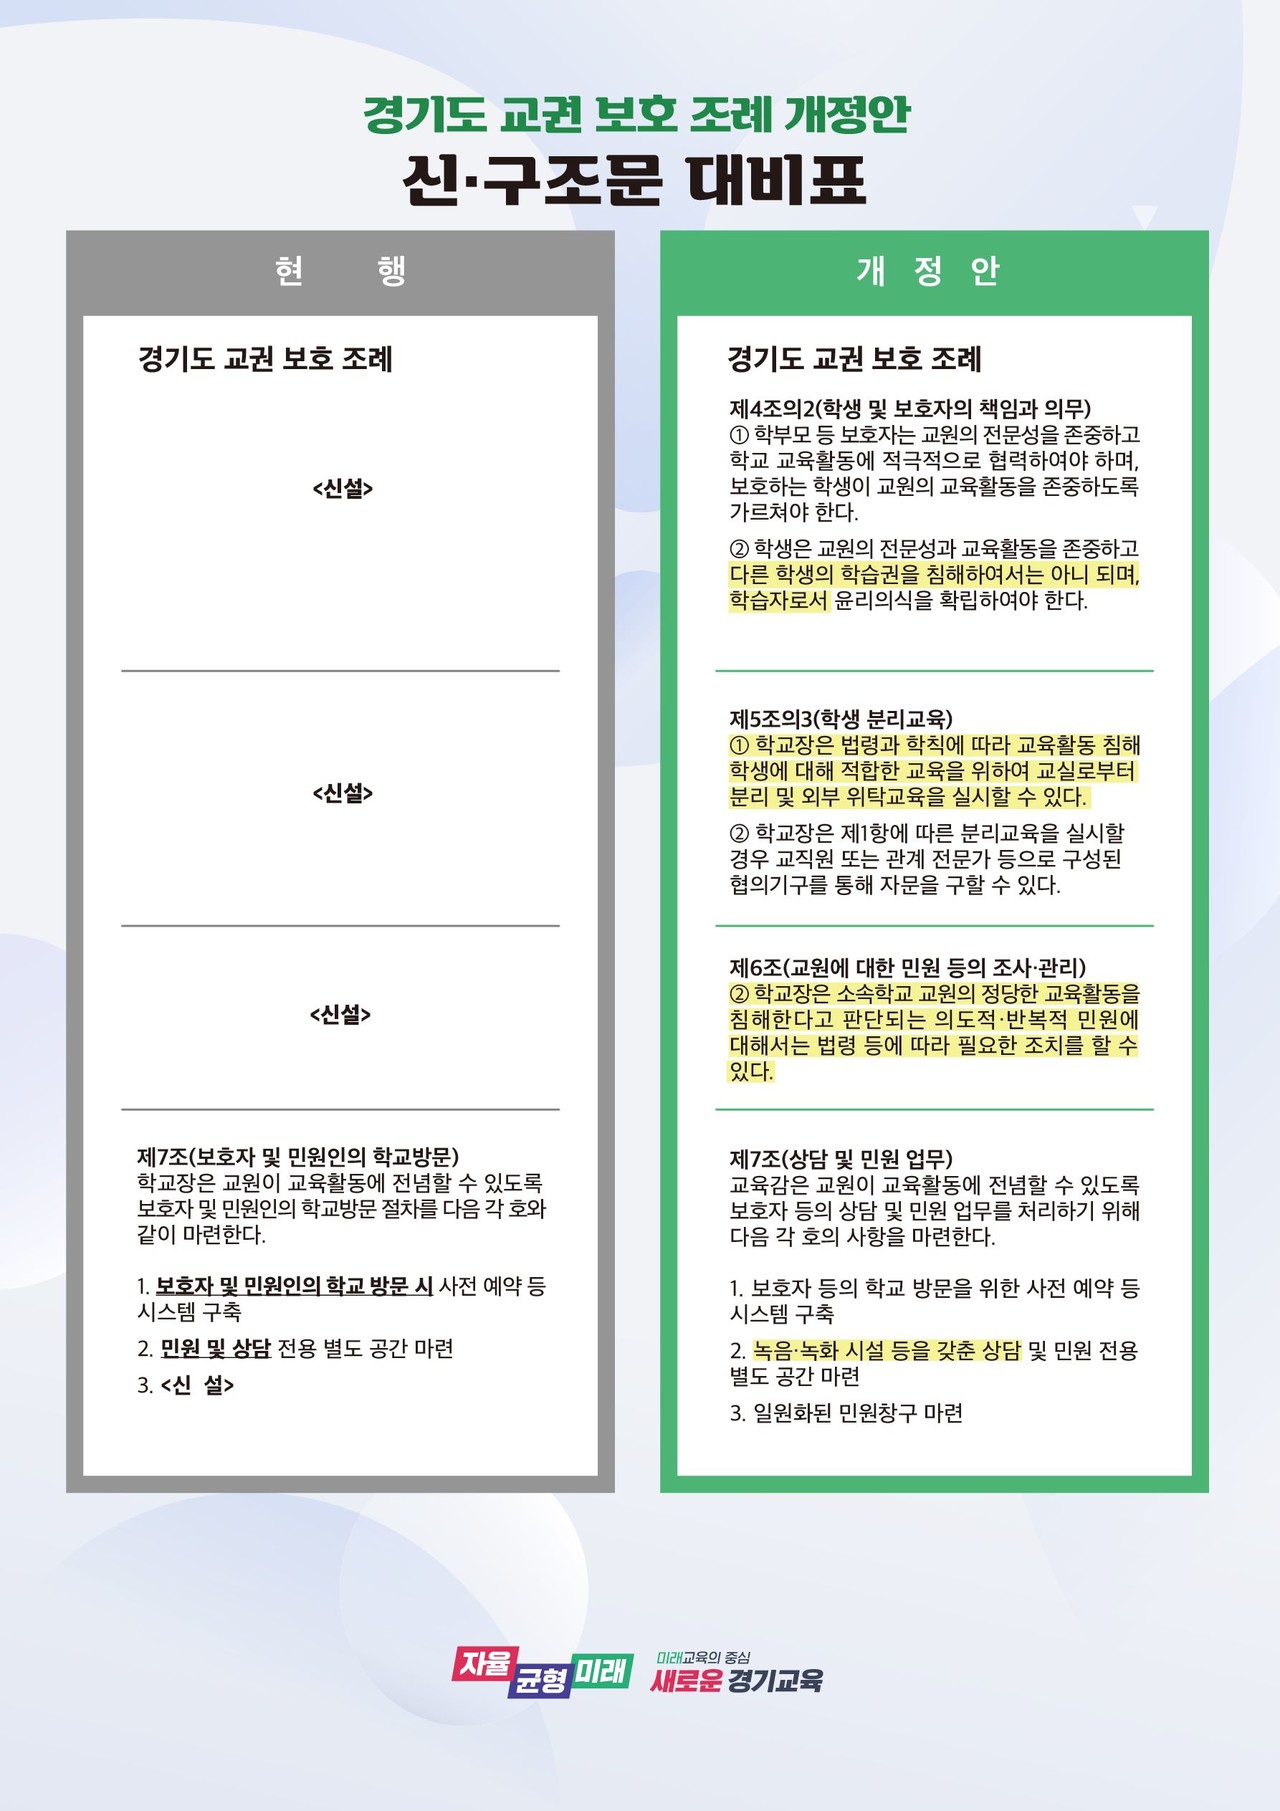 경기도 교권보호 조례 개정안(신구조문 대비표)